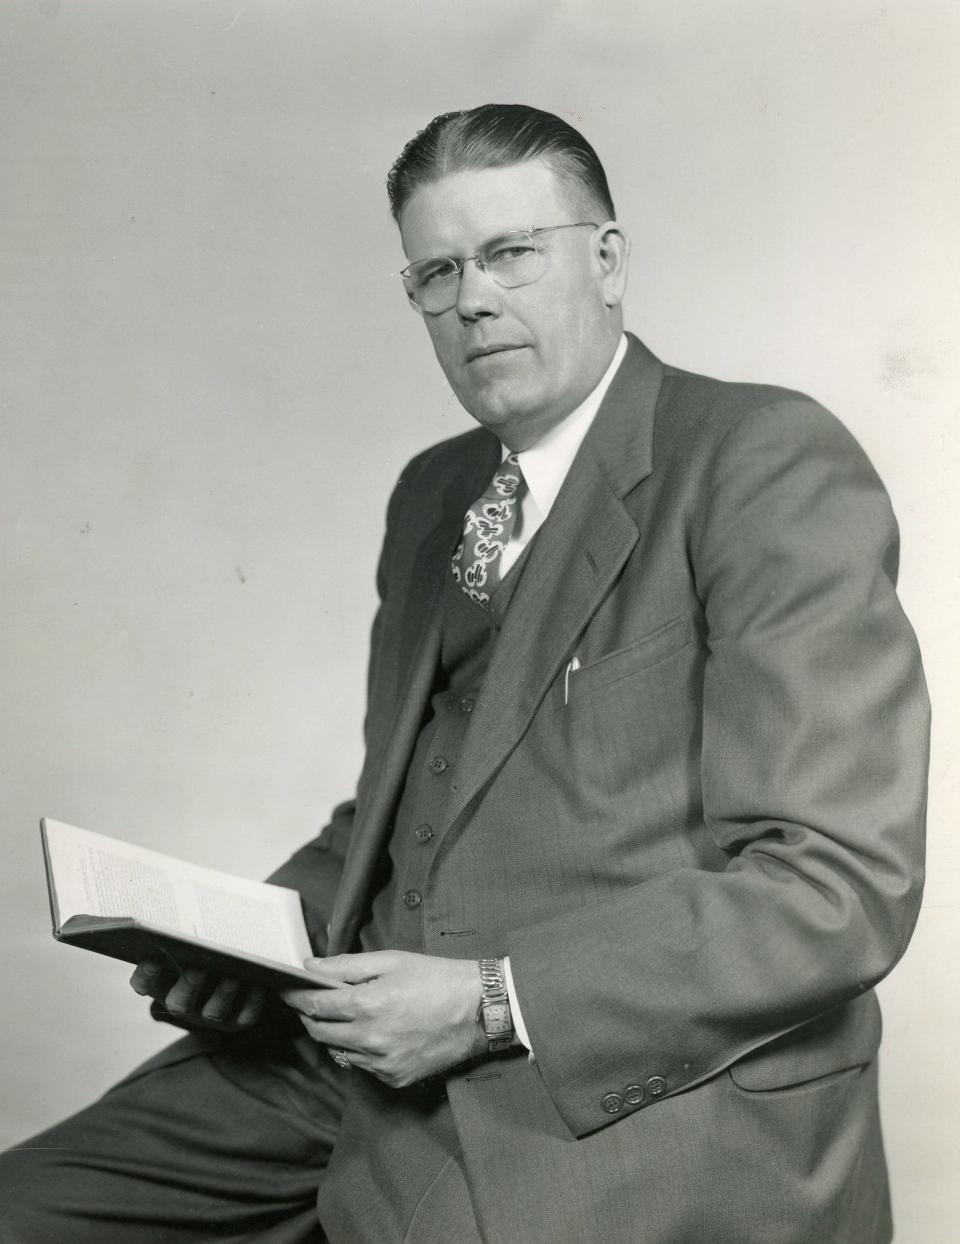 The Rev. Dallas F. Billington